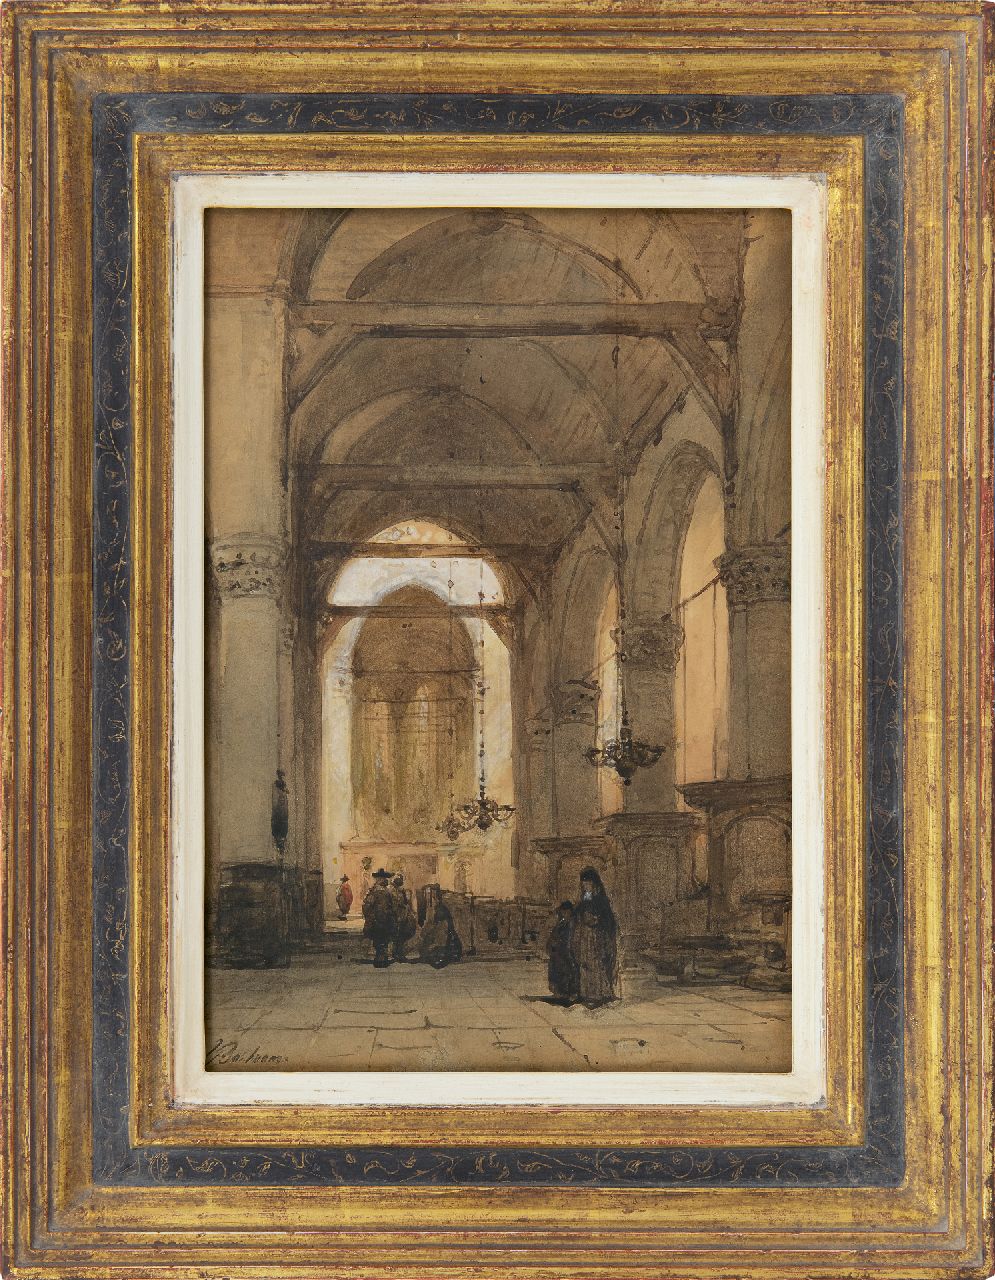 Bosboom J.  | Johannes Bosboom, Kerkinterieur met figuren, aquarel op papier 26,5 x 18,3 cm, gesigneerd linksonder